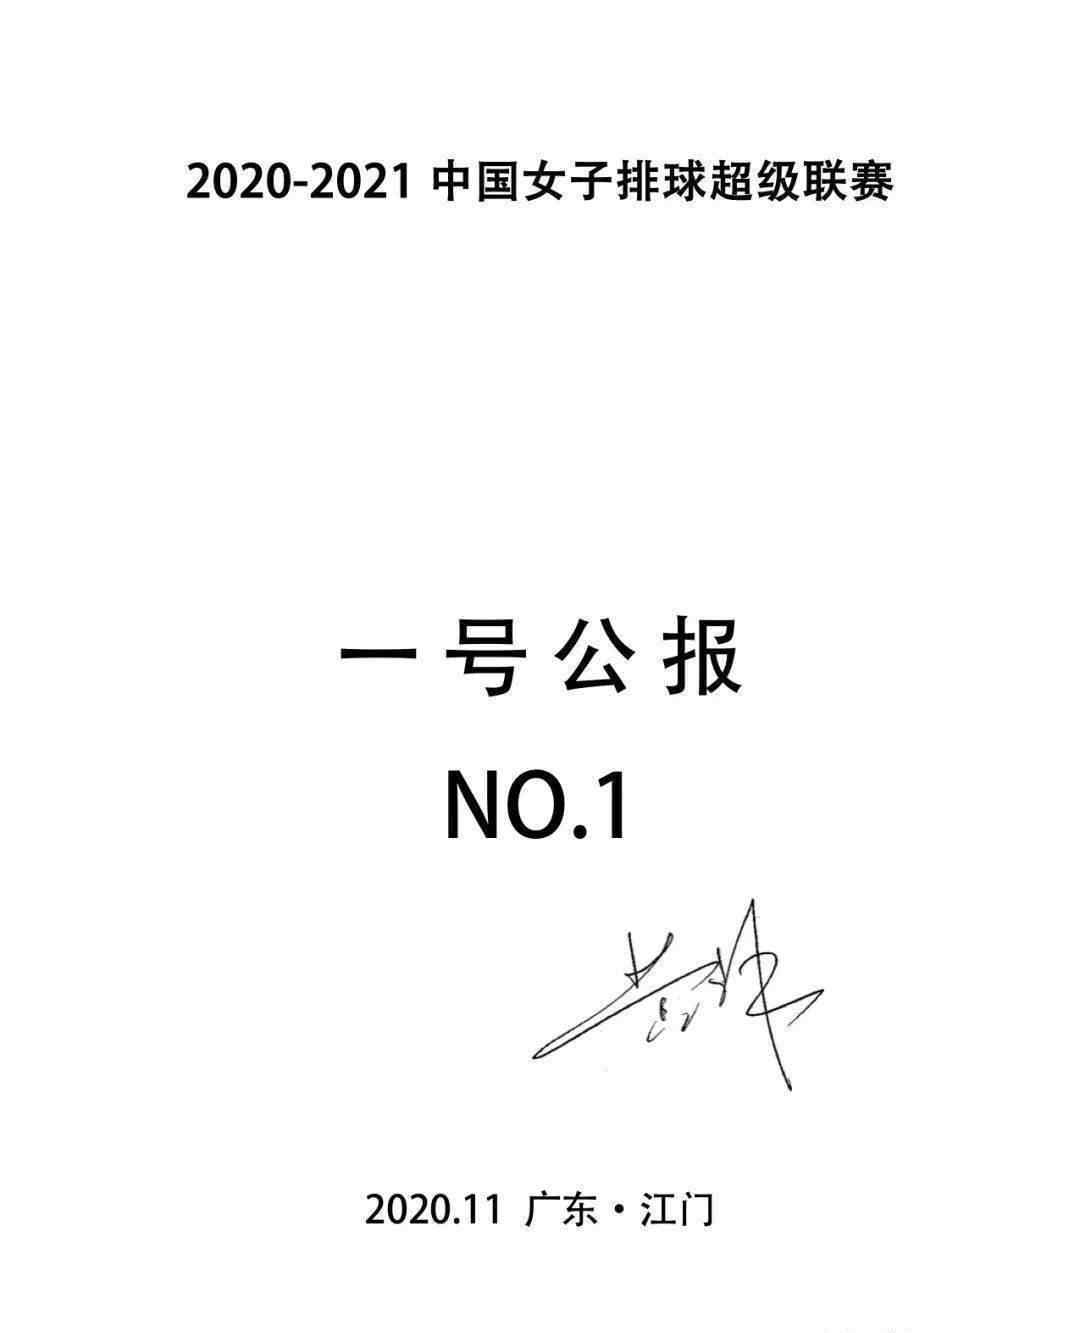 女排1号 2020-2021中国女子排球超级联赛一号公报 参赛队伍名单